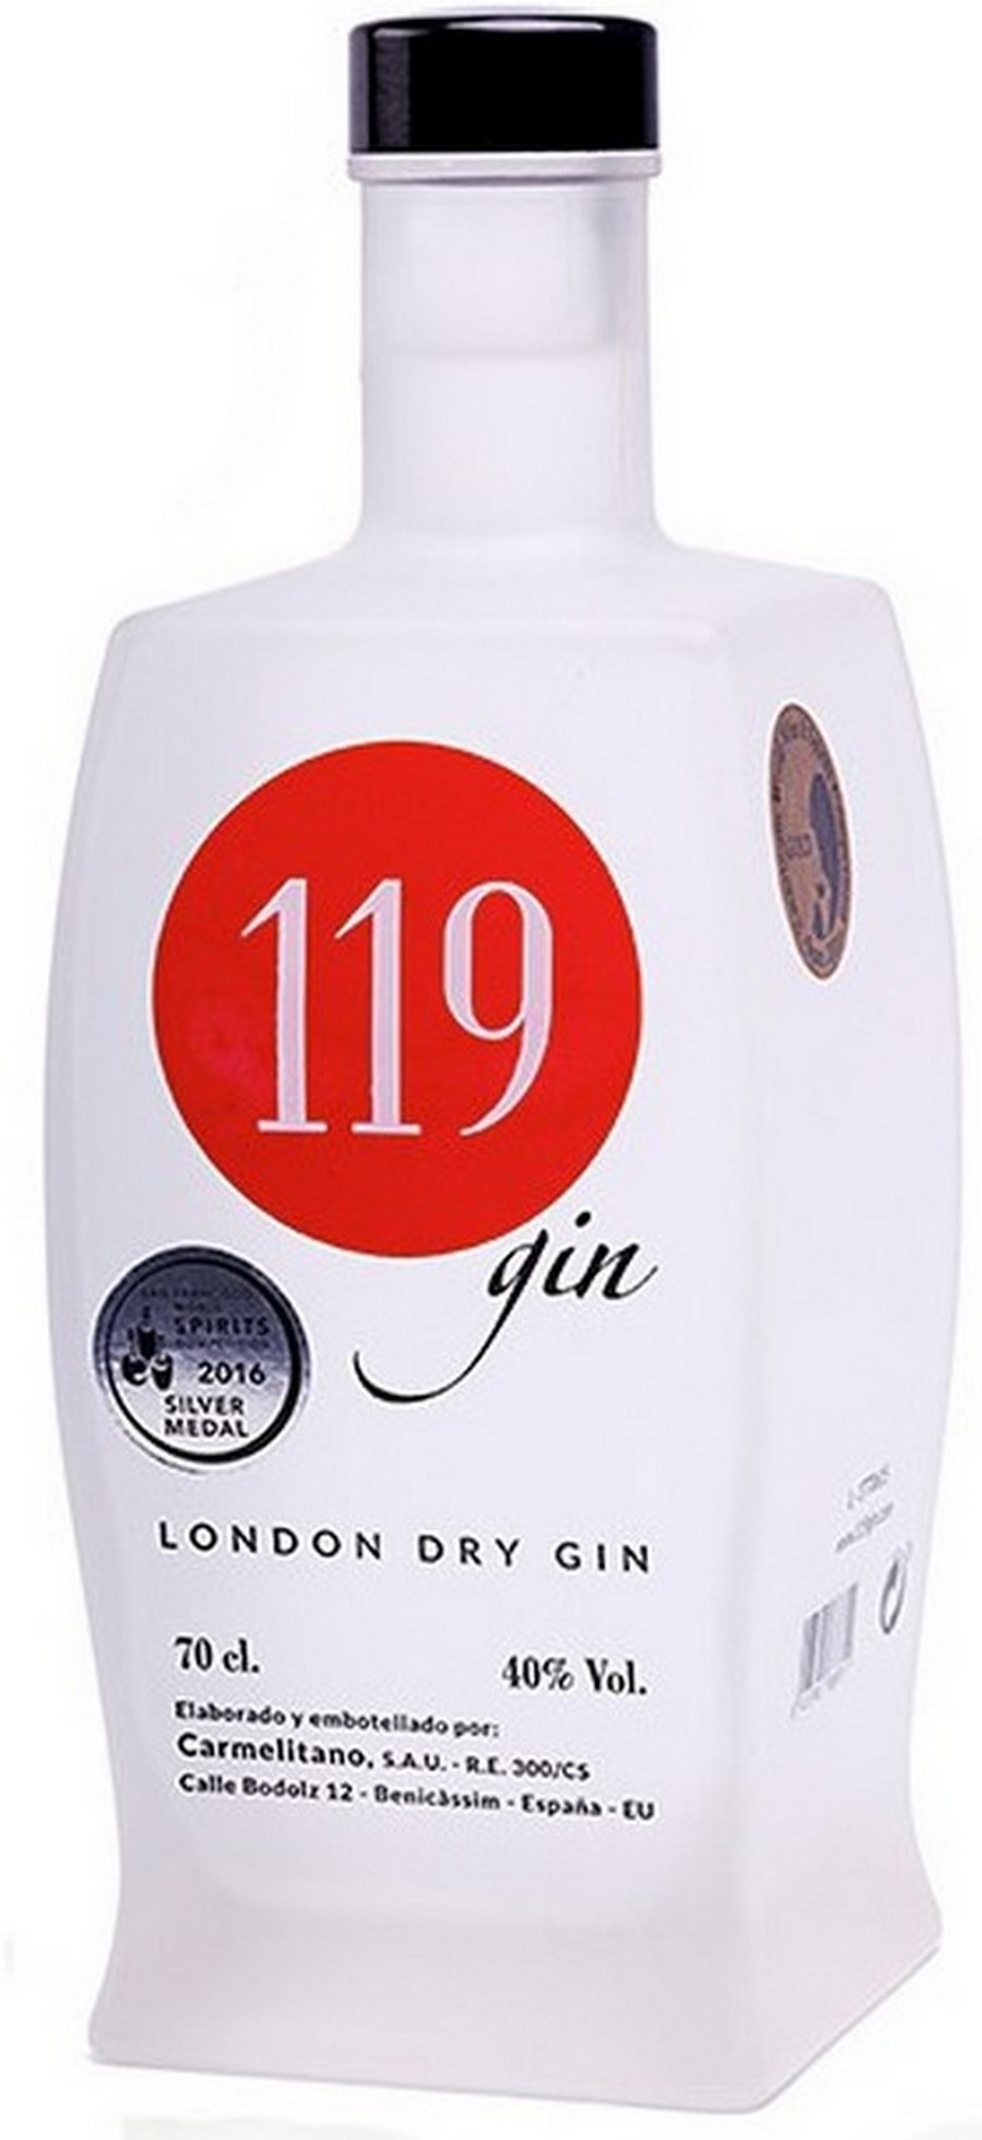 119-gin-